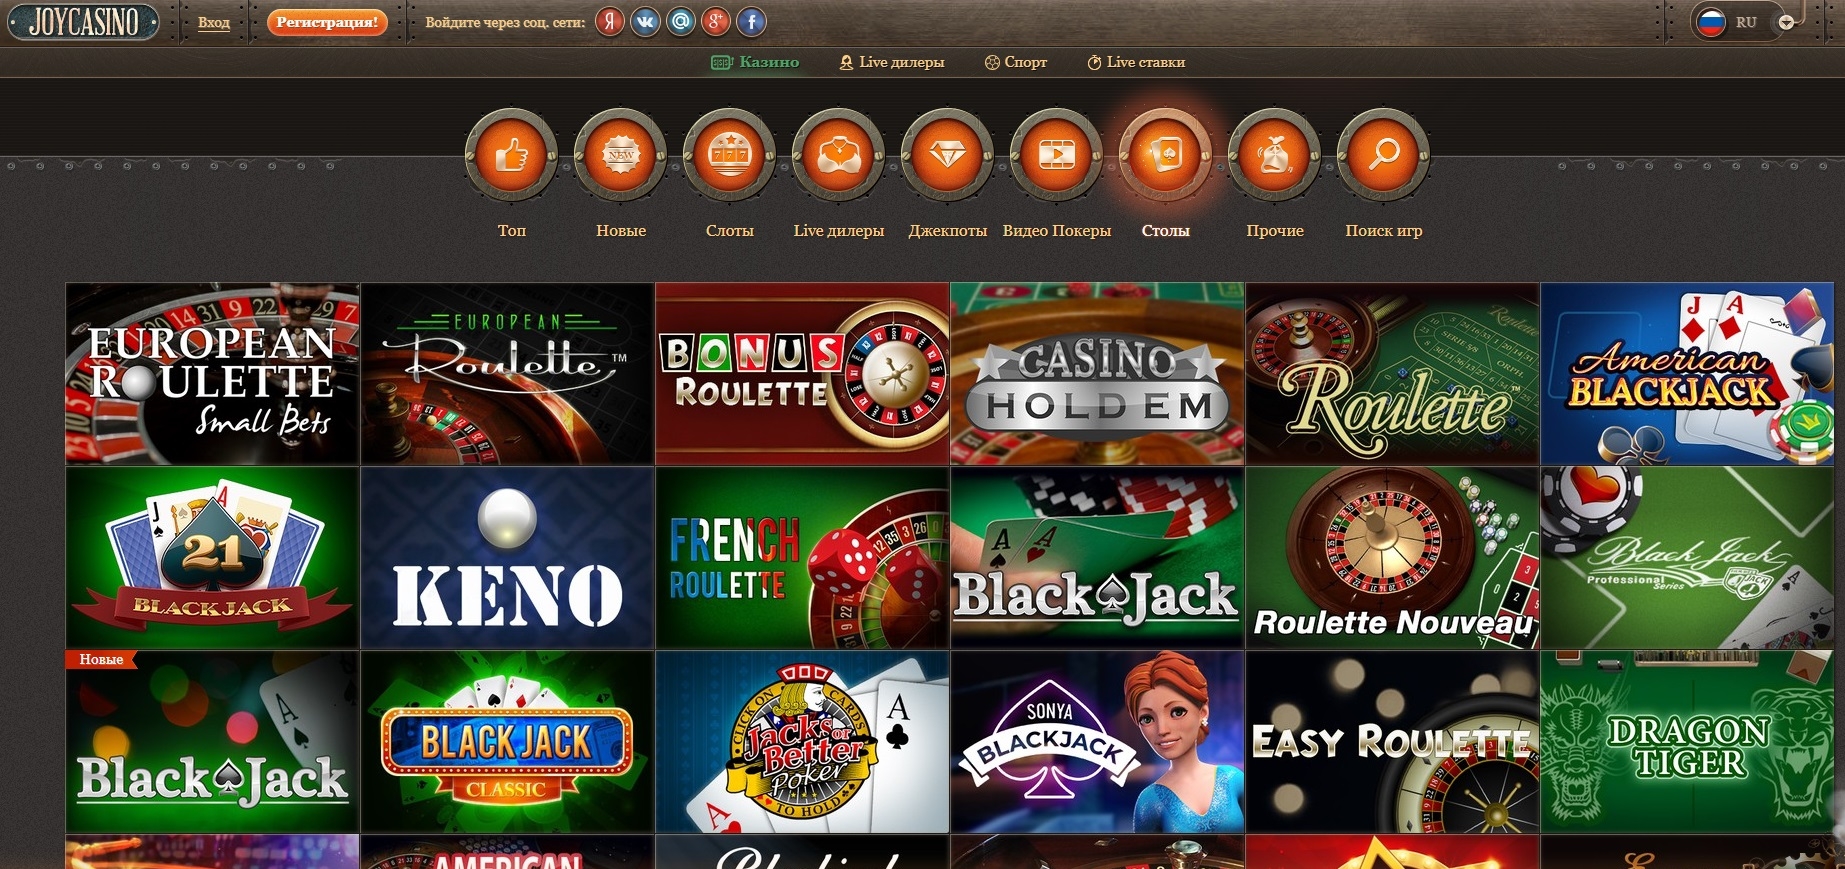 Покер дом официальный сайт joycasino digital казино играть онлайн kazinonadengitop2 com